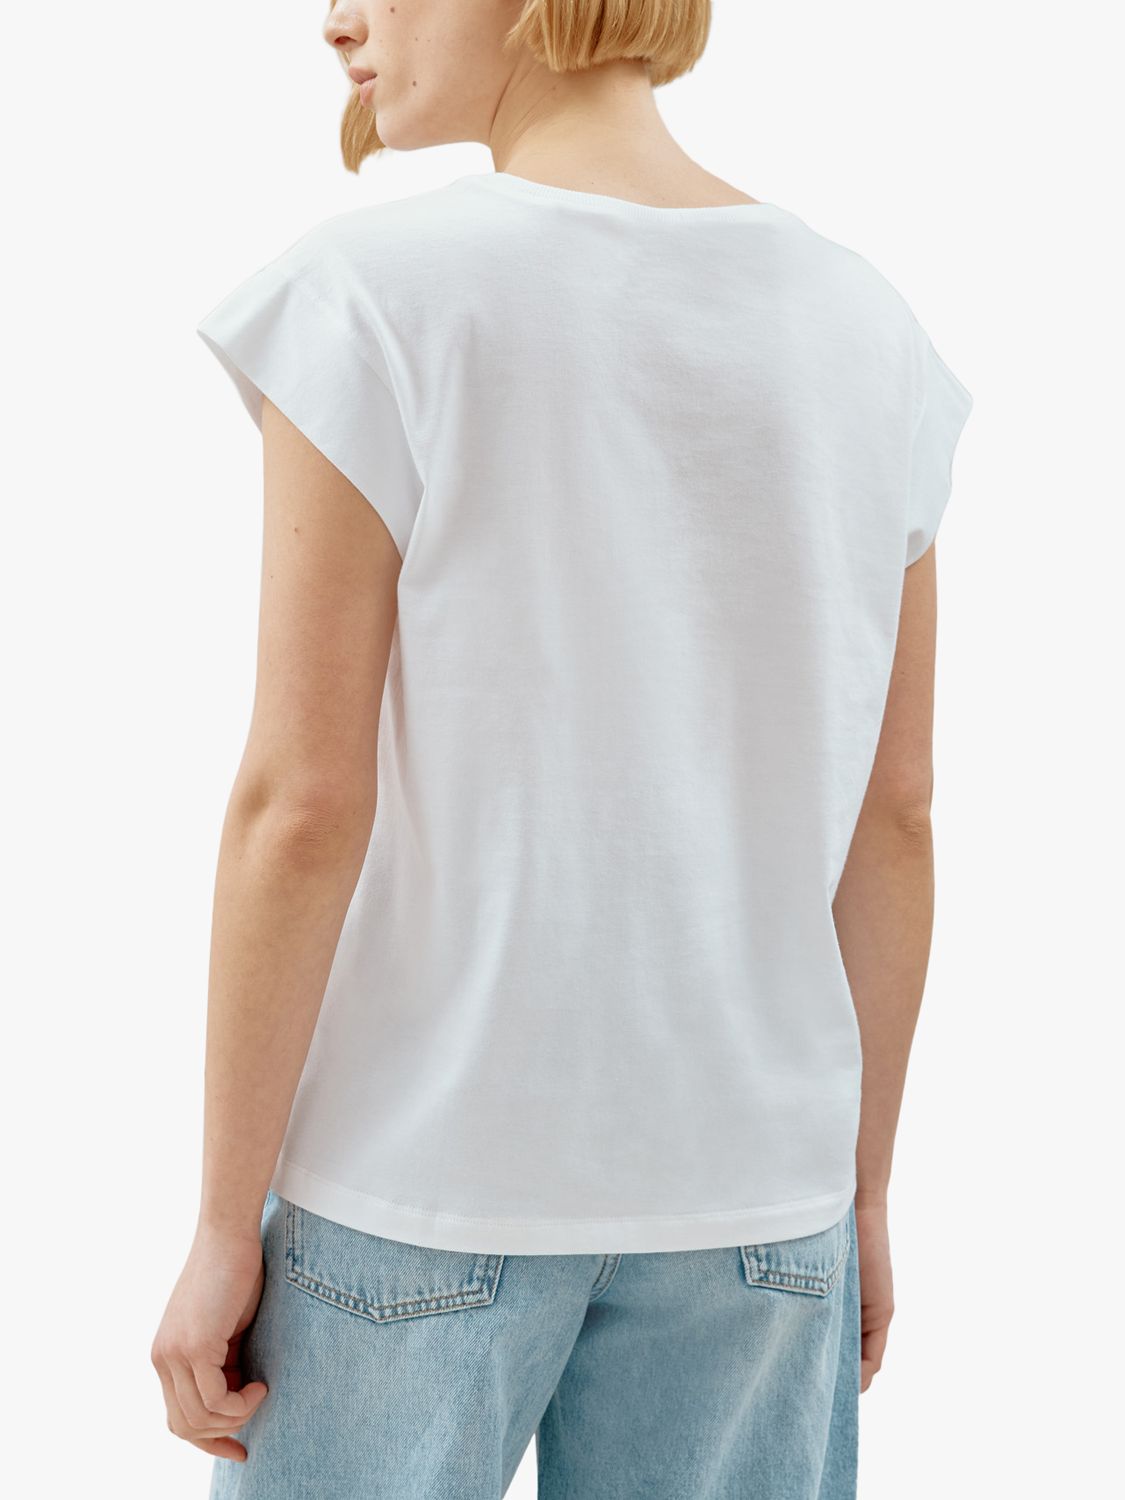 Albaray Extended Shoulder T-Shirt, White, 8